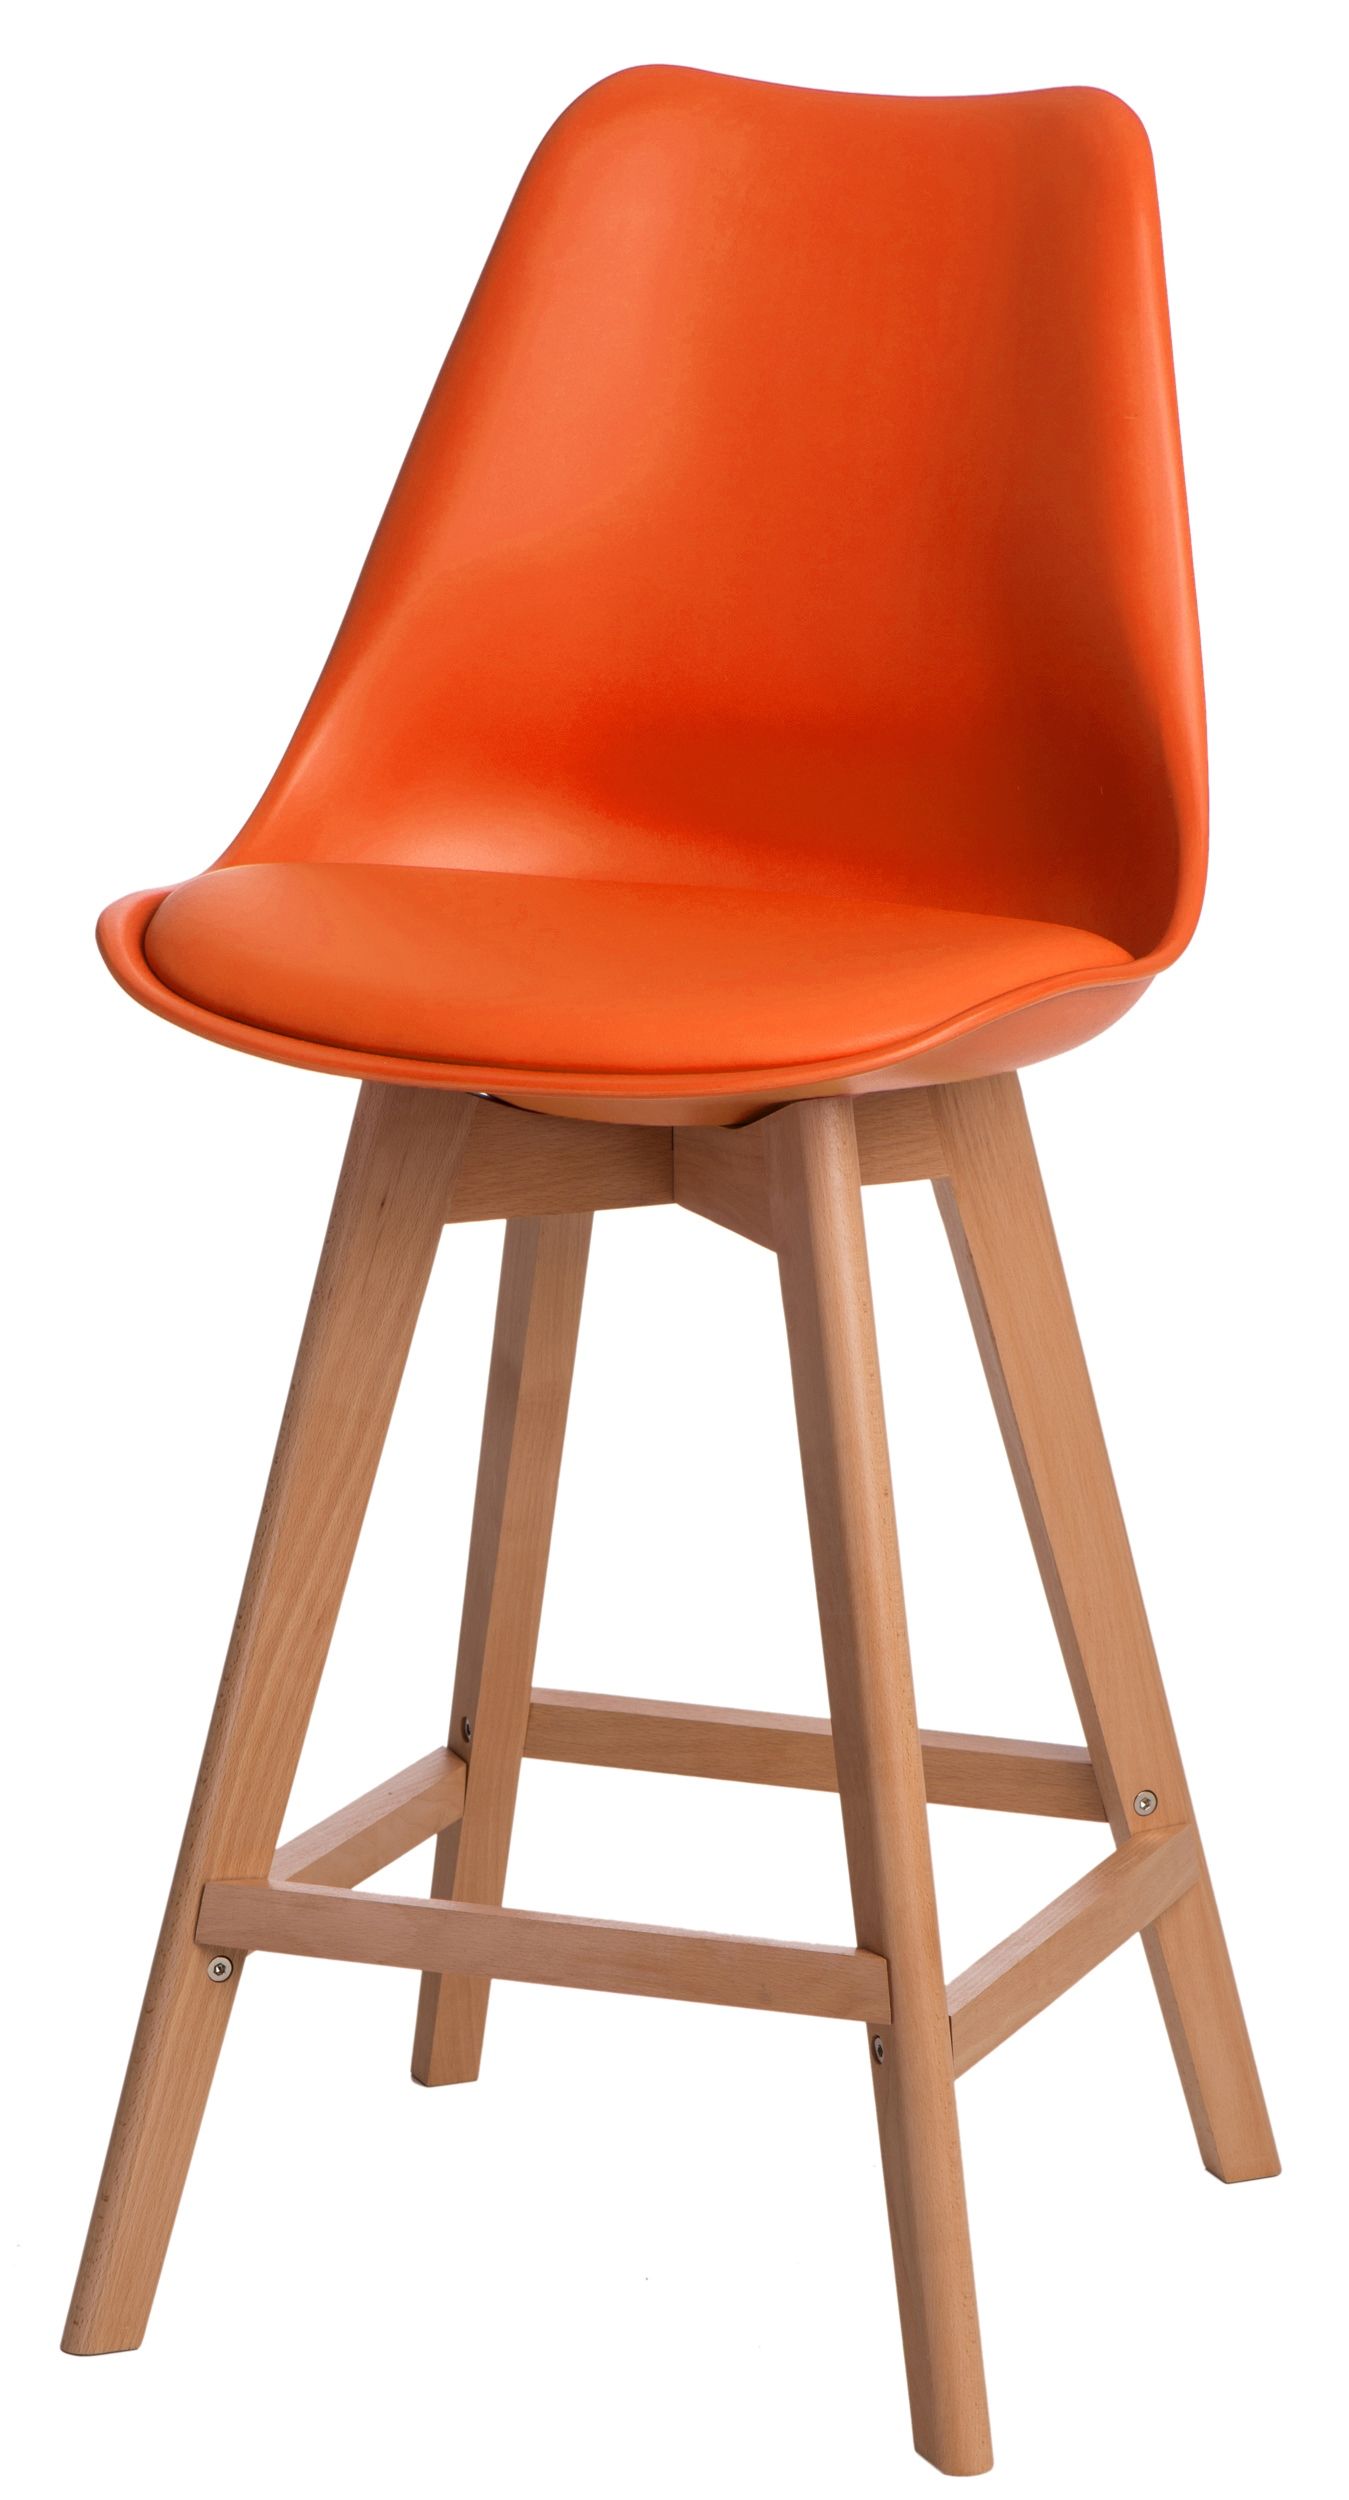  Barová židle Norden Wood Low PP oranžovo pomerančový - Mobler.cz